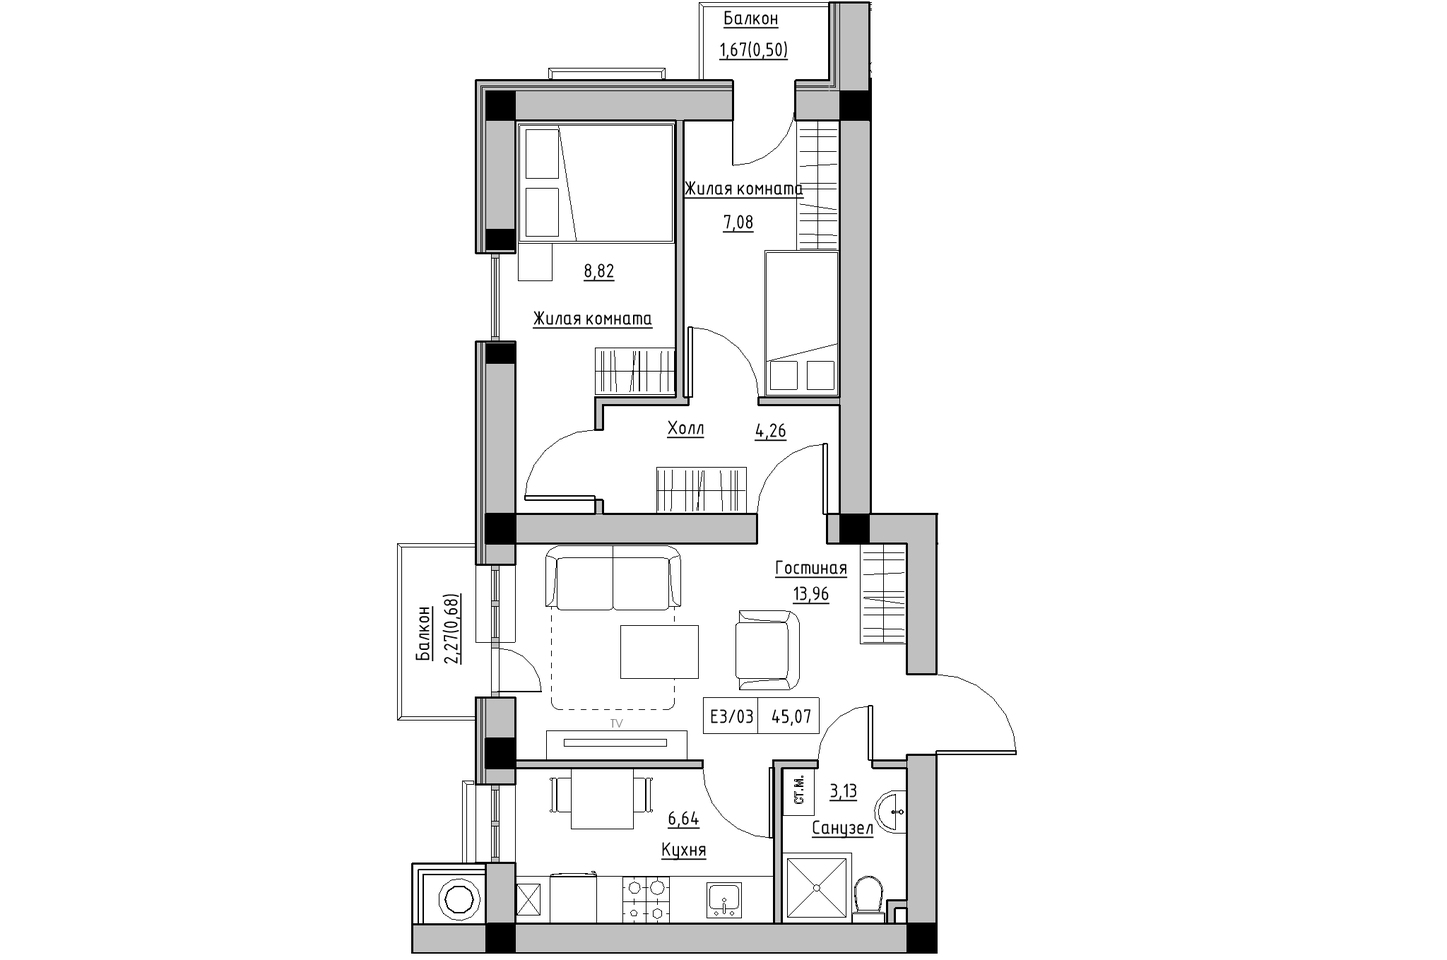 Планування 3-к квартира площею 45.07м2, KS-009-05/0006.